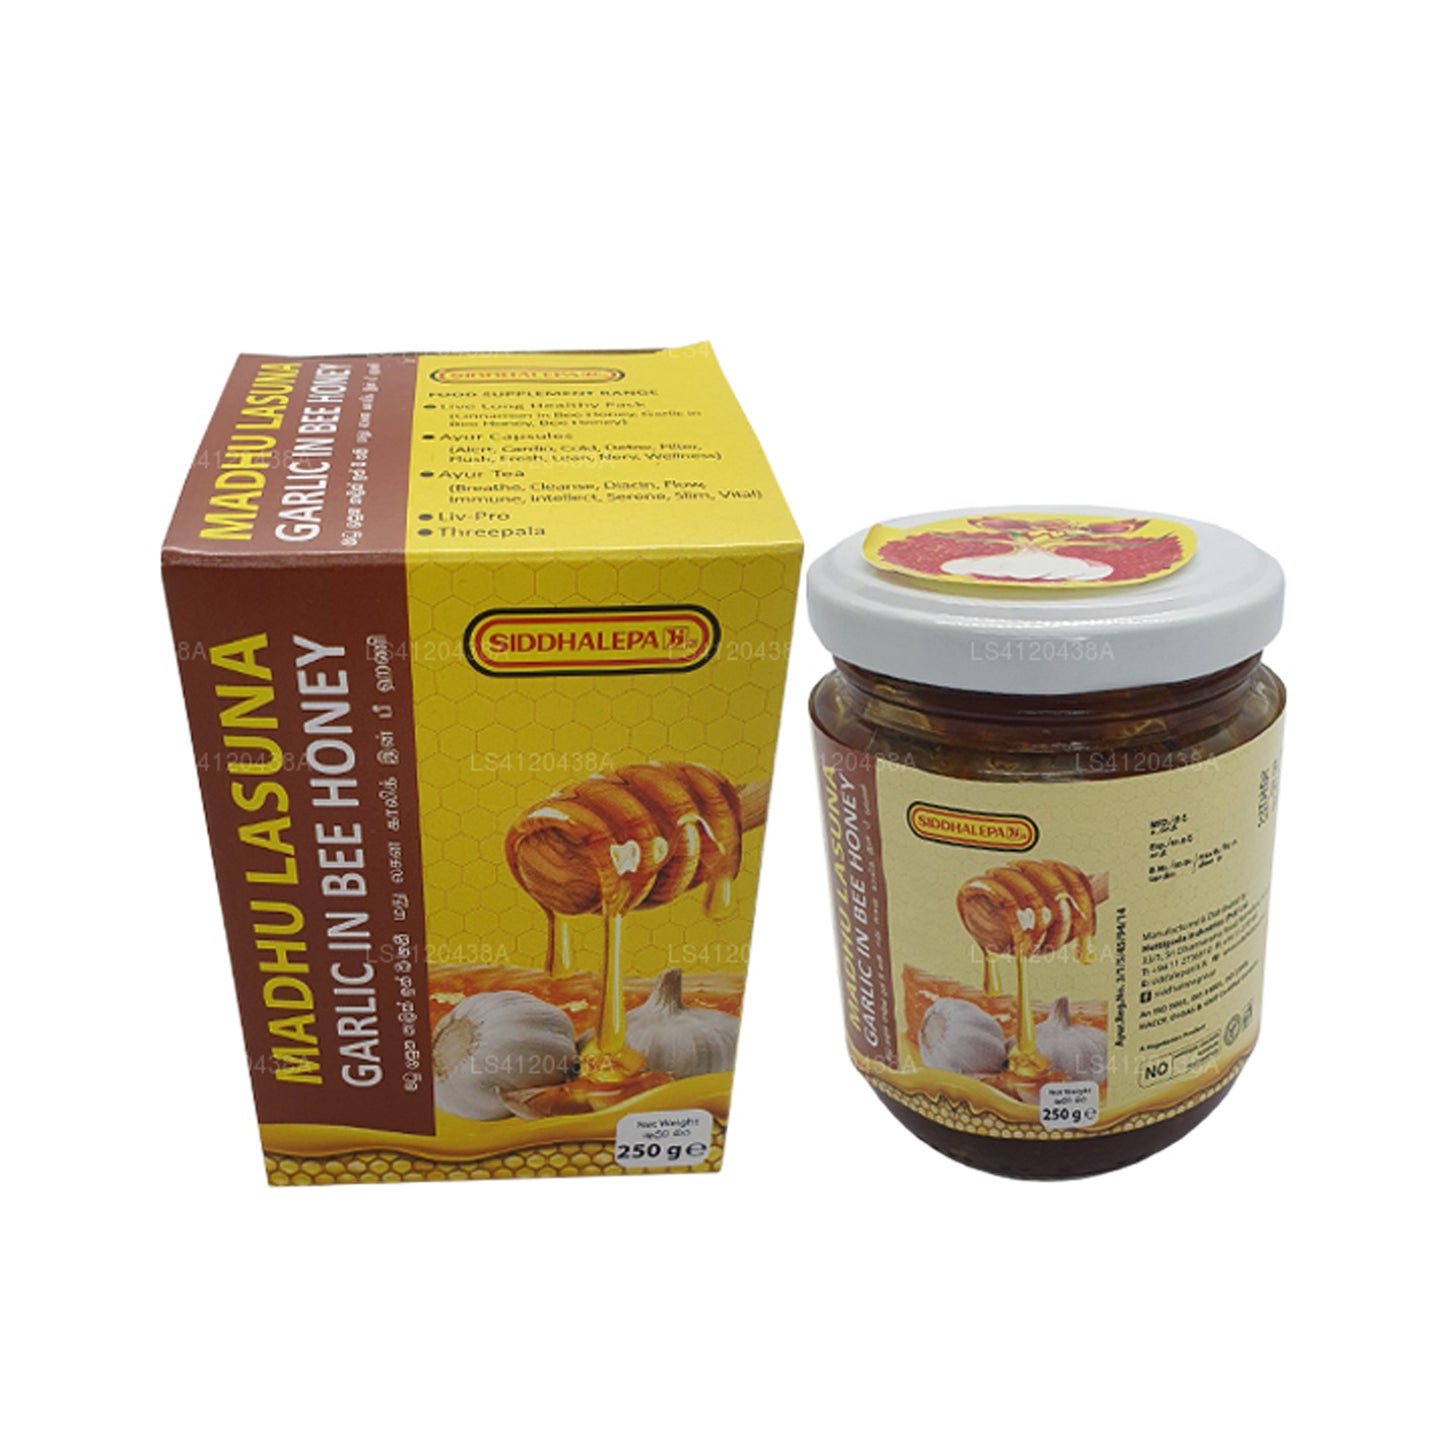 Siddhalepa Madhu Lasuna à l'ail et au miel d'abeille (250g)